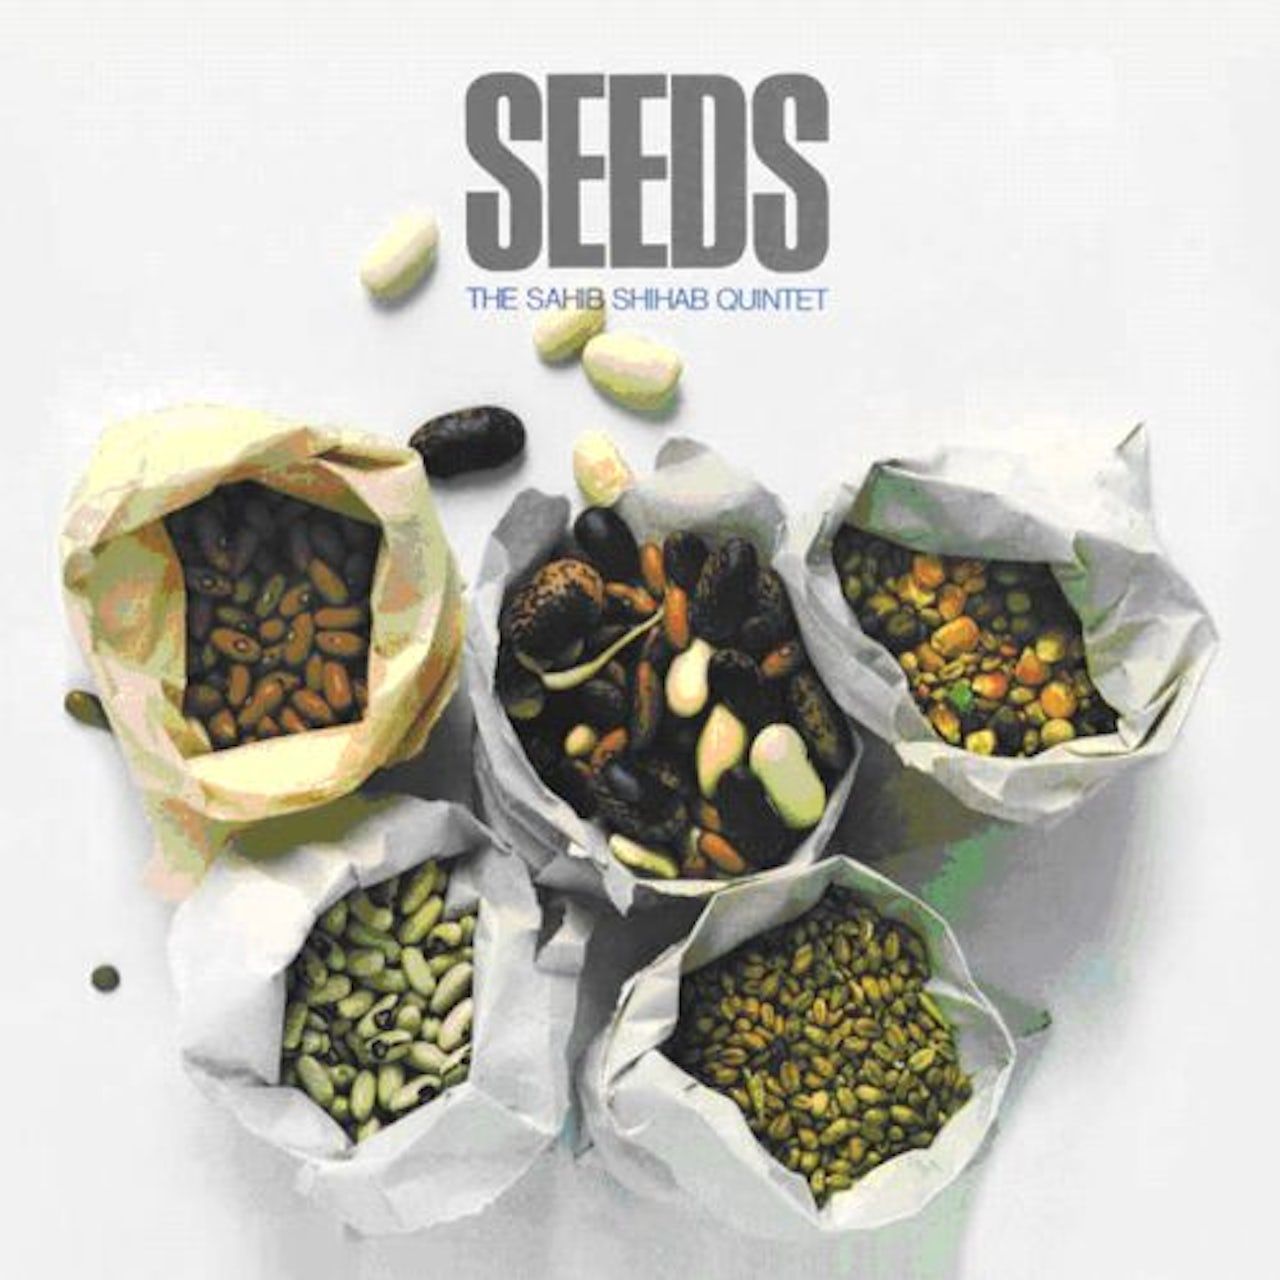 8018344121222, Виниловая пластинка Shihab, Sahib, Seeds официальный оригинальный музыкальный альбом jay chou jay